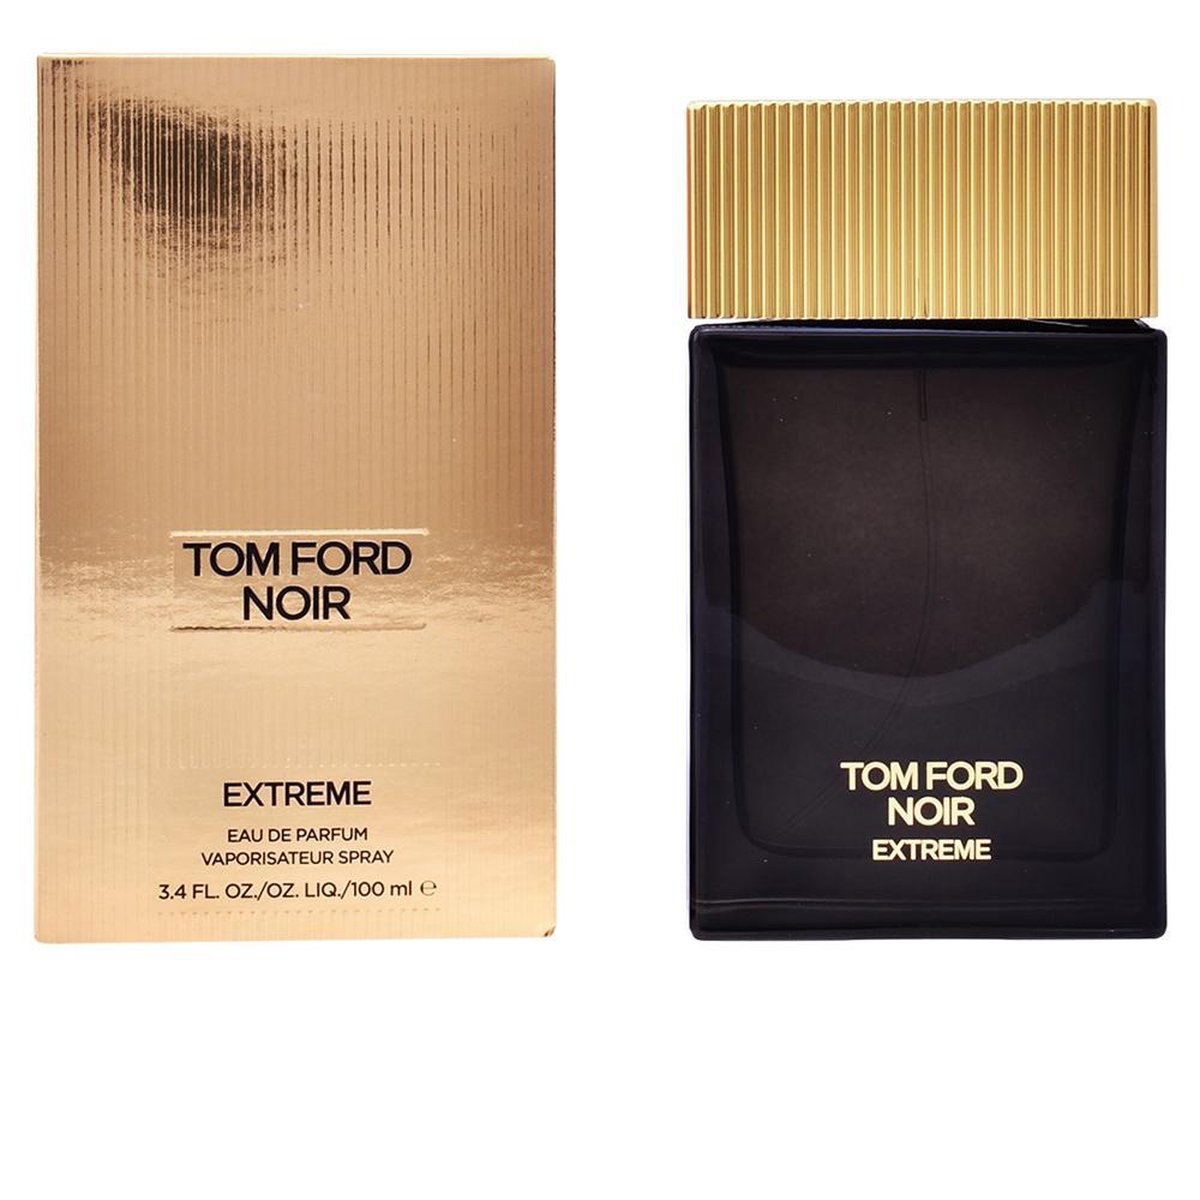 Tom Ford Noir Extreme Parfum 3.4 oz / 100 ml Extrait de Parfum